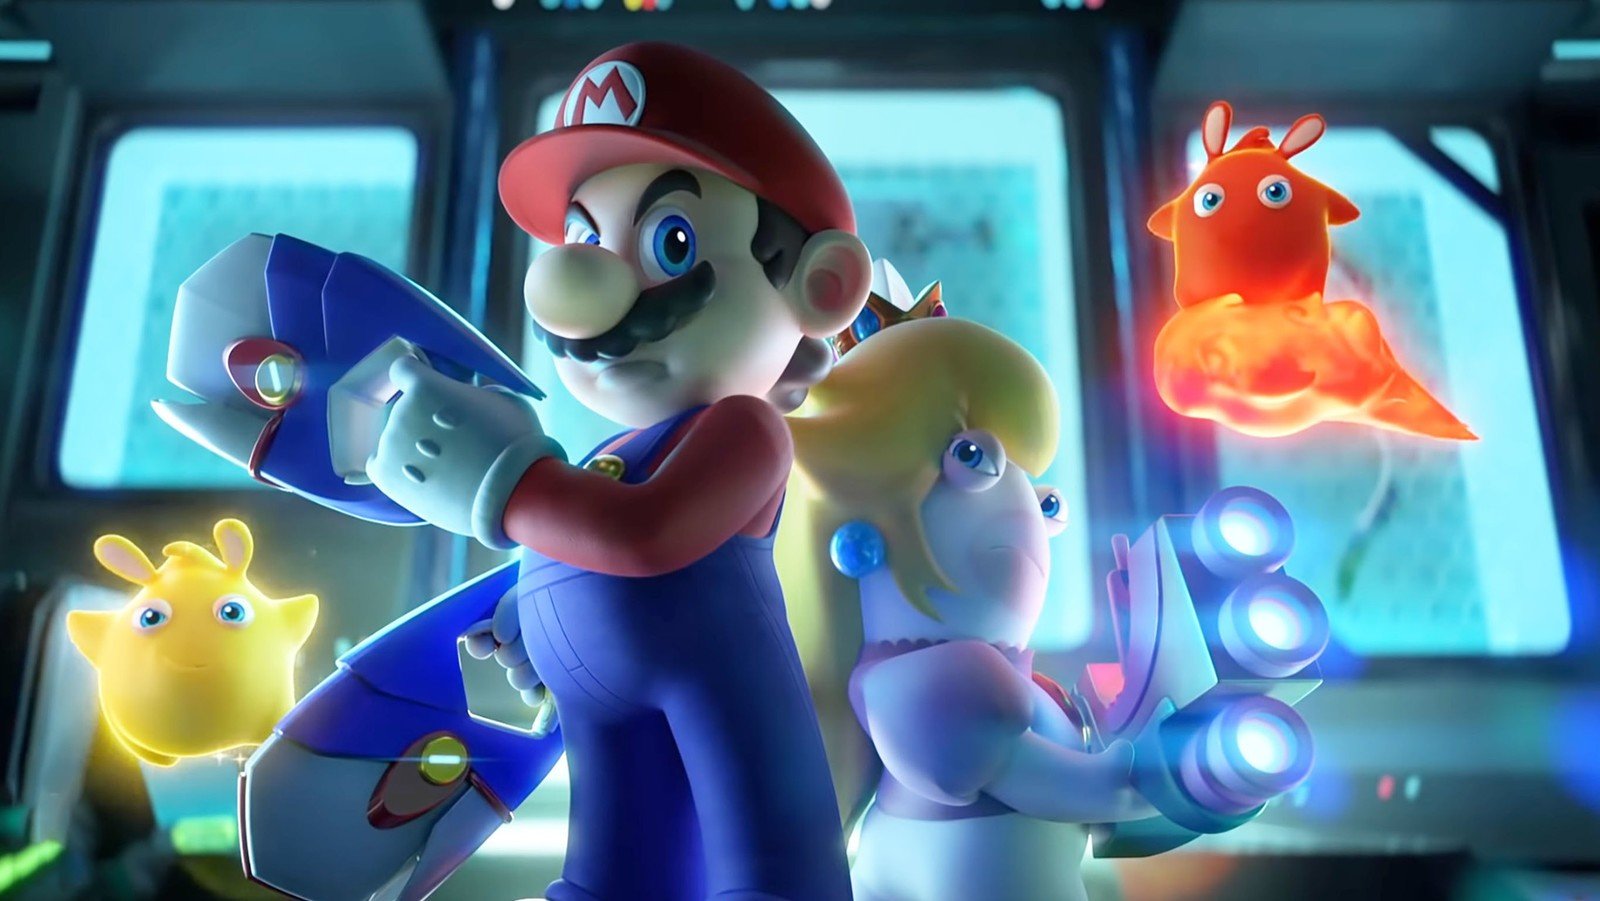 Rayman é destaque em novo trailer do DLC de Mario + Rabbids Sparks of Hope